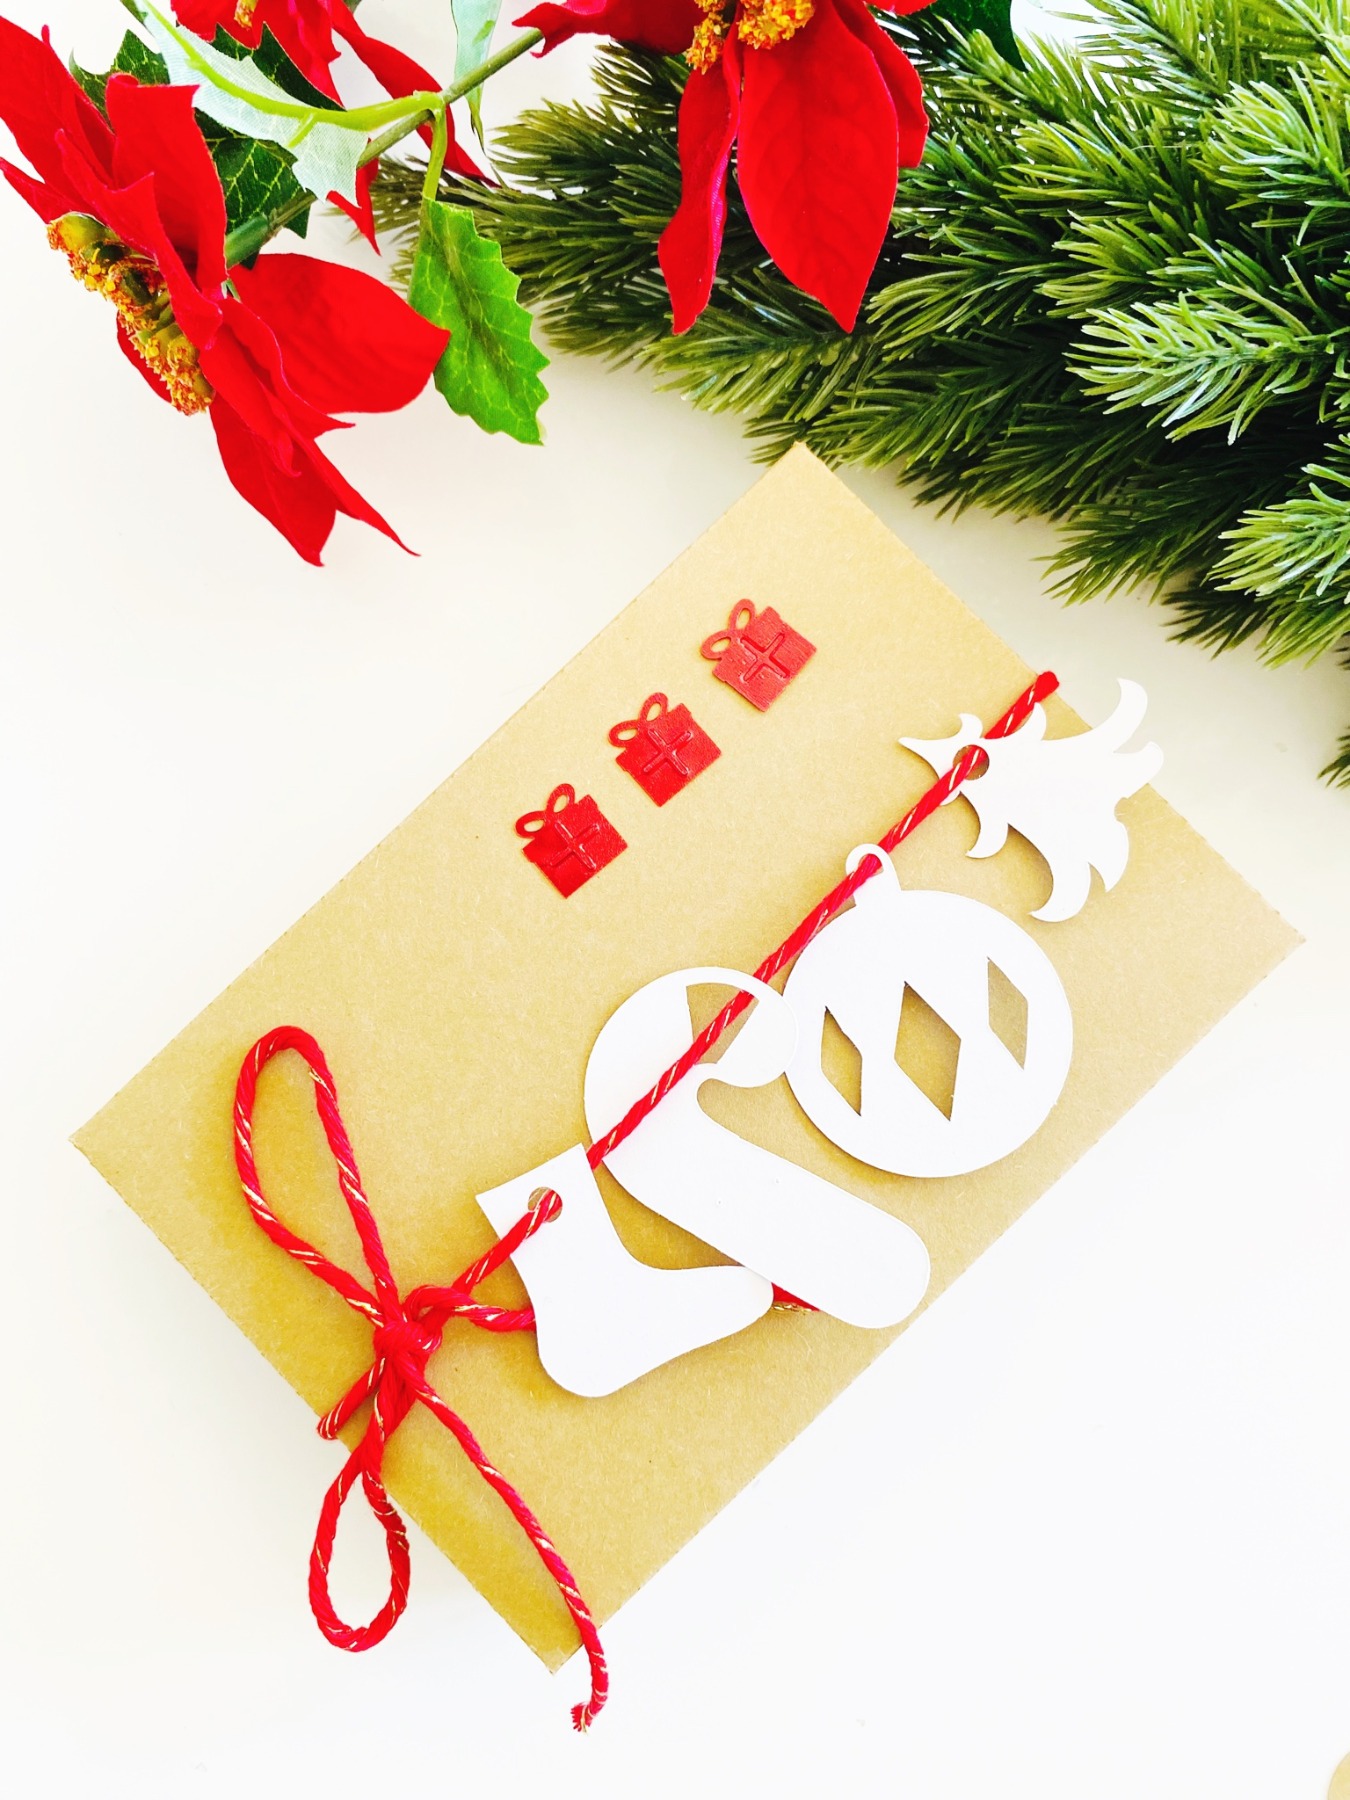 Bastelset für Weihnachten, DIY Kit Weihnachtskarten basteln, Weihnachtsgeschenke verpacken Ideen 6